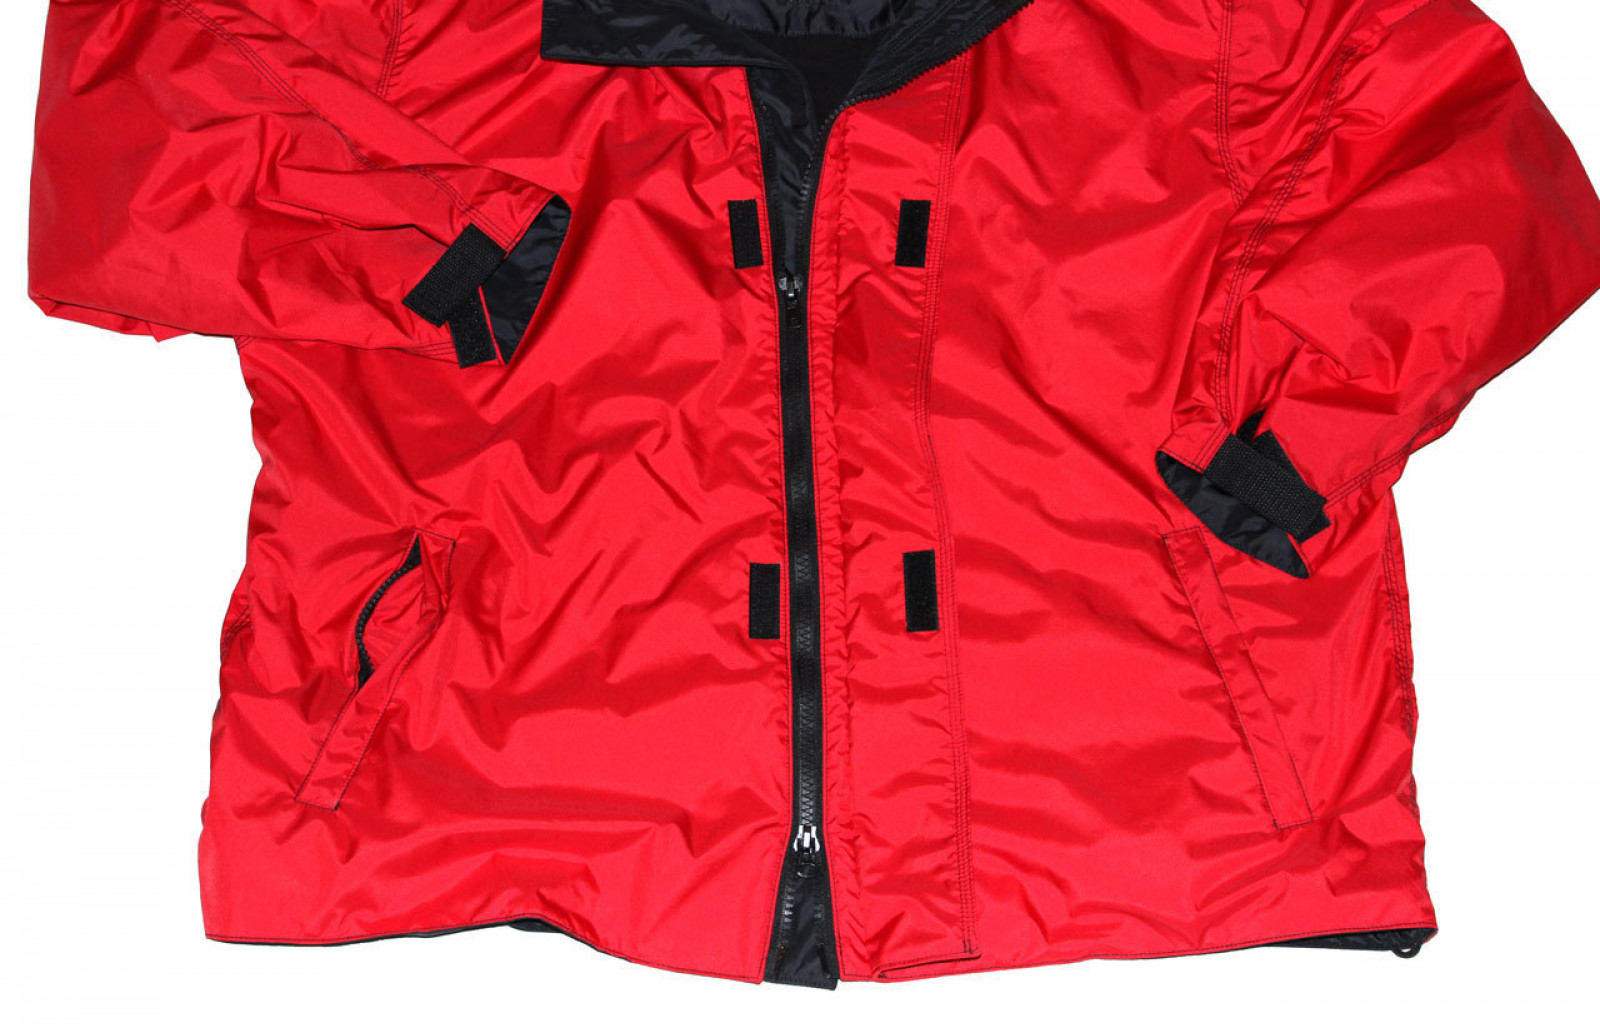 Куртка с флисовой подкладкой. Aquamax 3.3 куртка демисезонная с флисовой подкладкой. Куртка Sky 6852929. Куртка спортивная непромокаемая. Красная куртка.